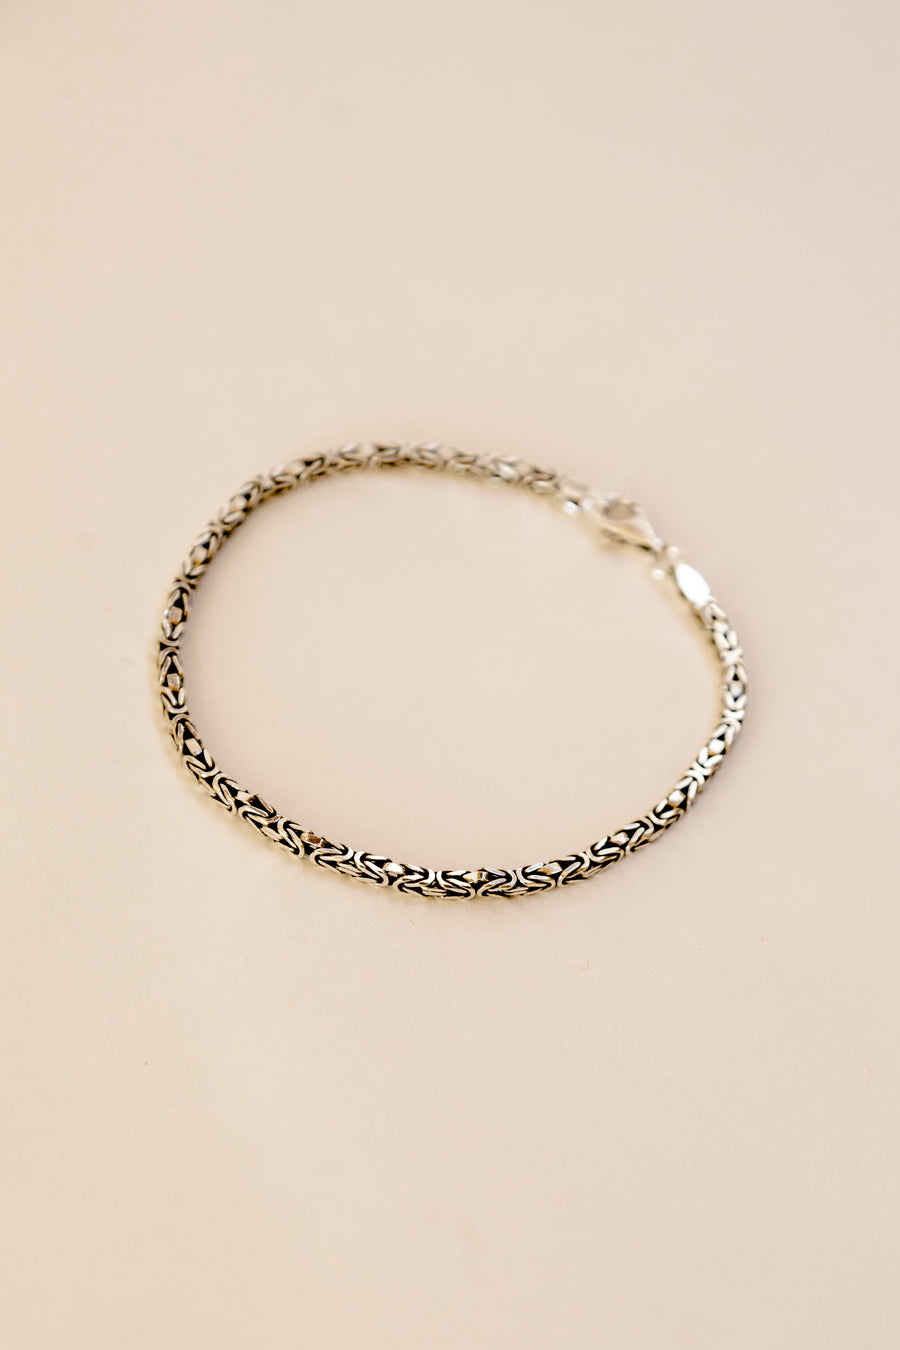 Greek Silver Bracelet